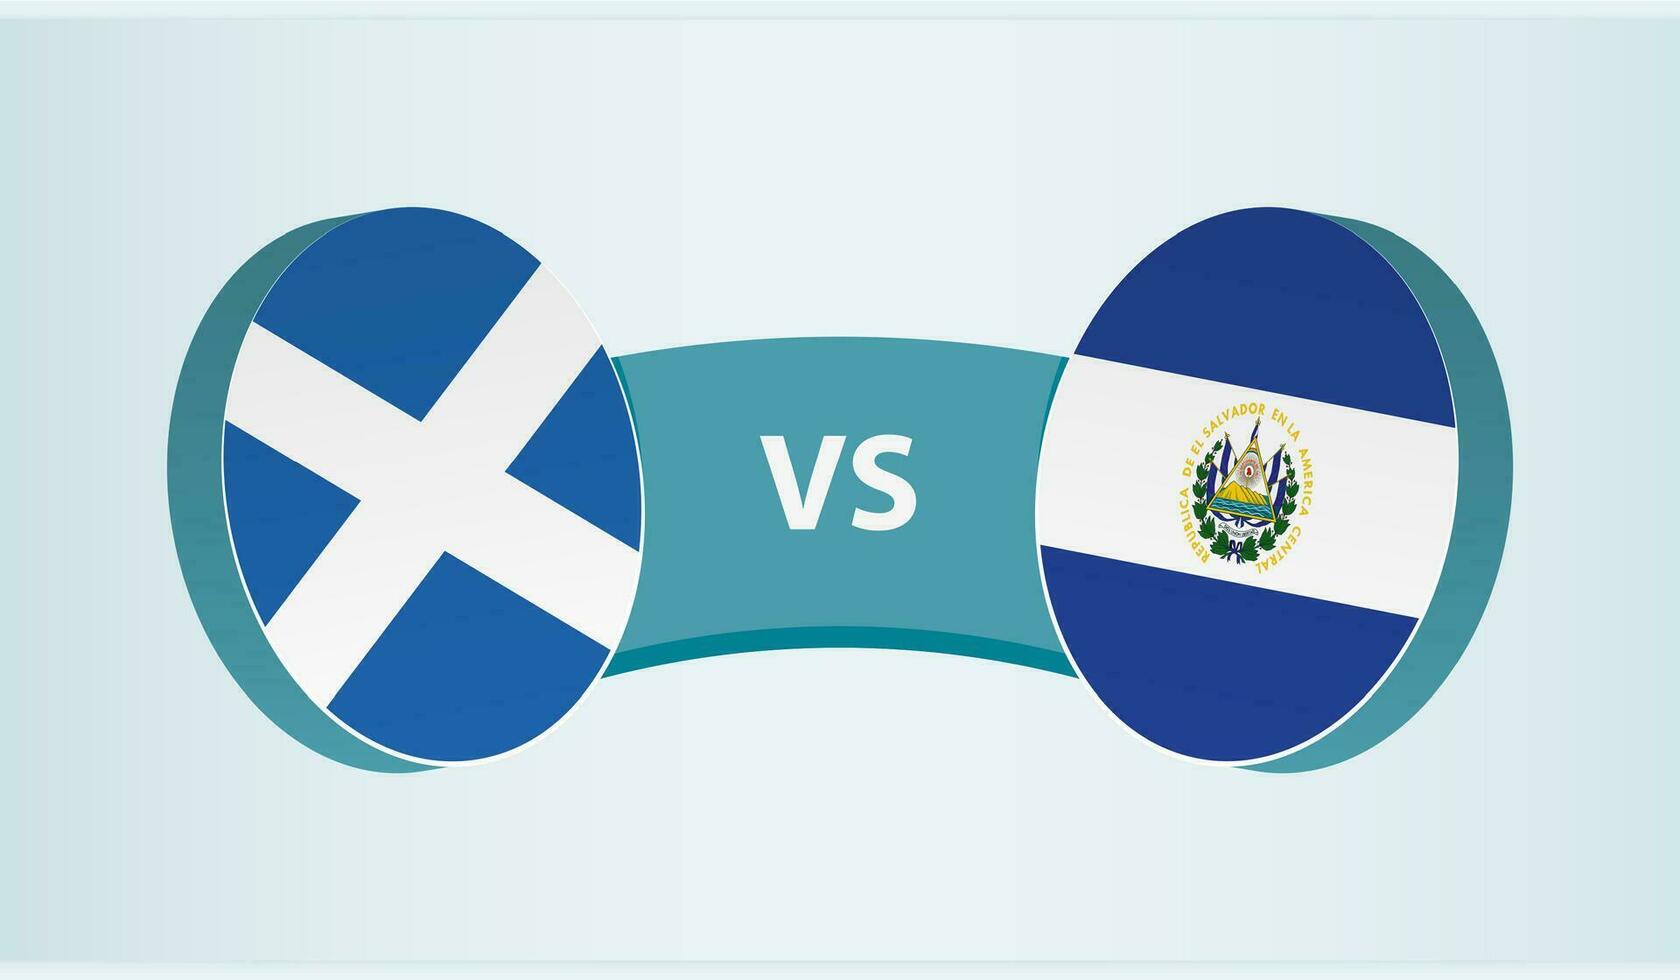 Schotland versus el salvador, team sport- wedstrijd concept. vector